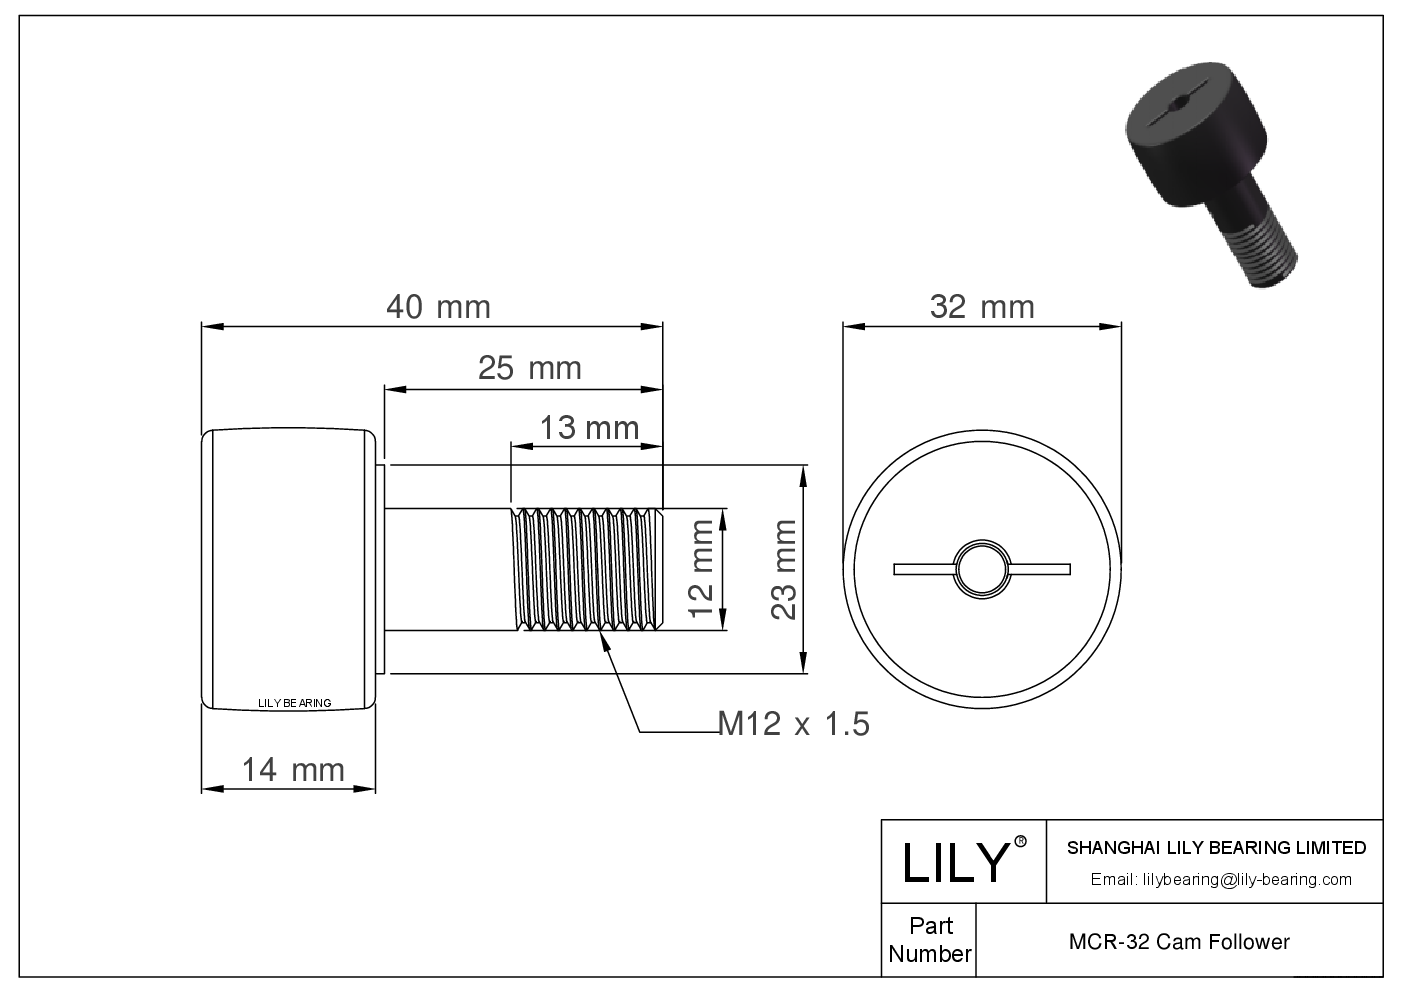 MCR-32 Stud Style Metric Cam Followers CAD图形